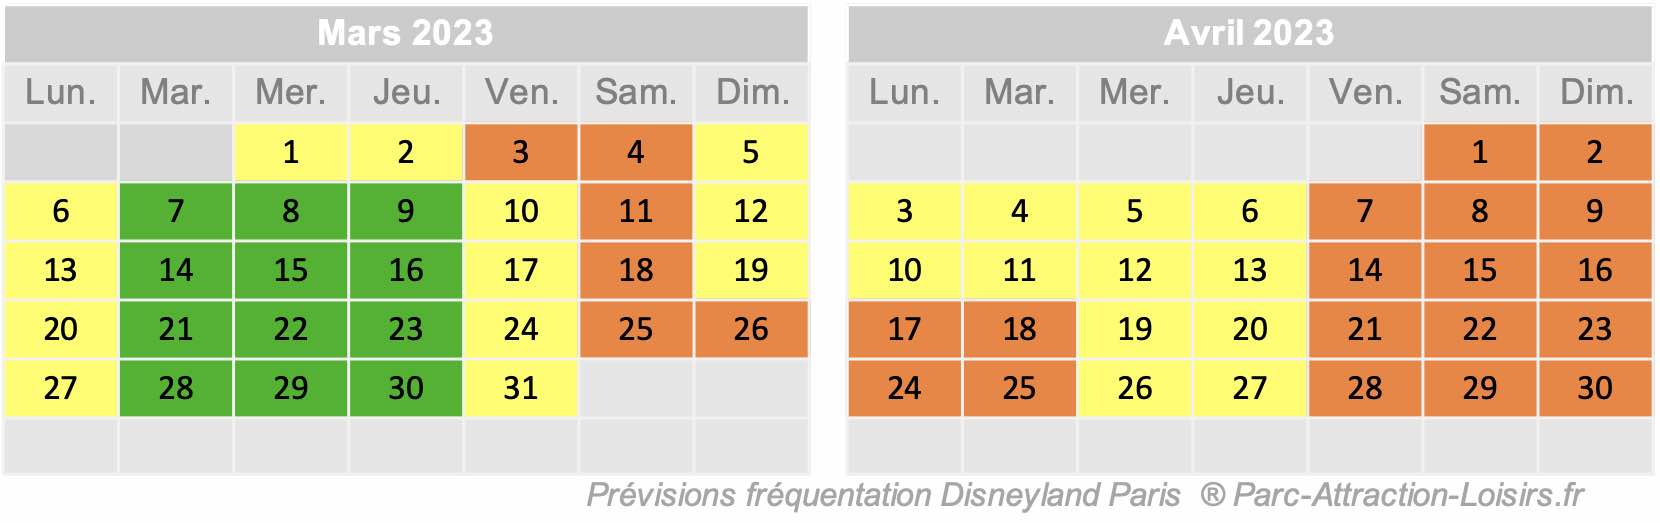 Affluence Disney 2023 2024 calendrier de la fréquentation